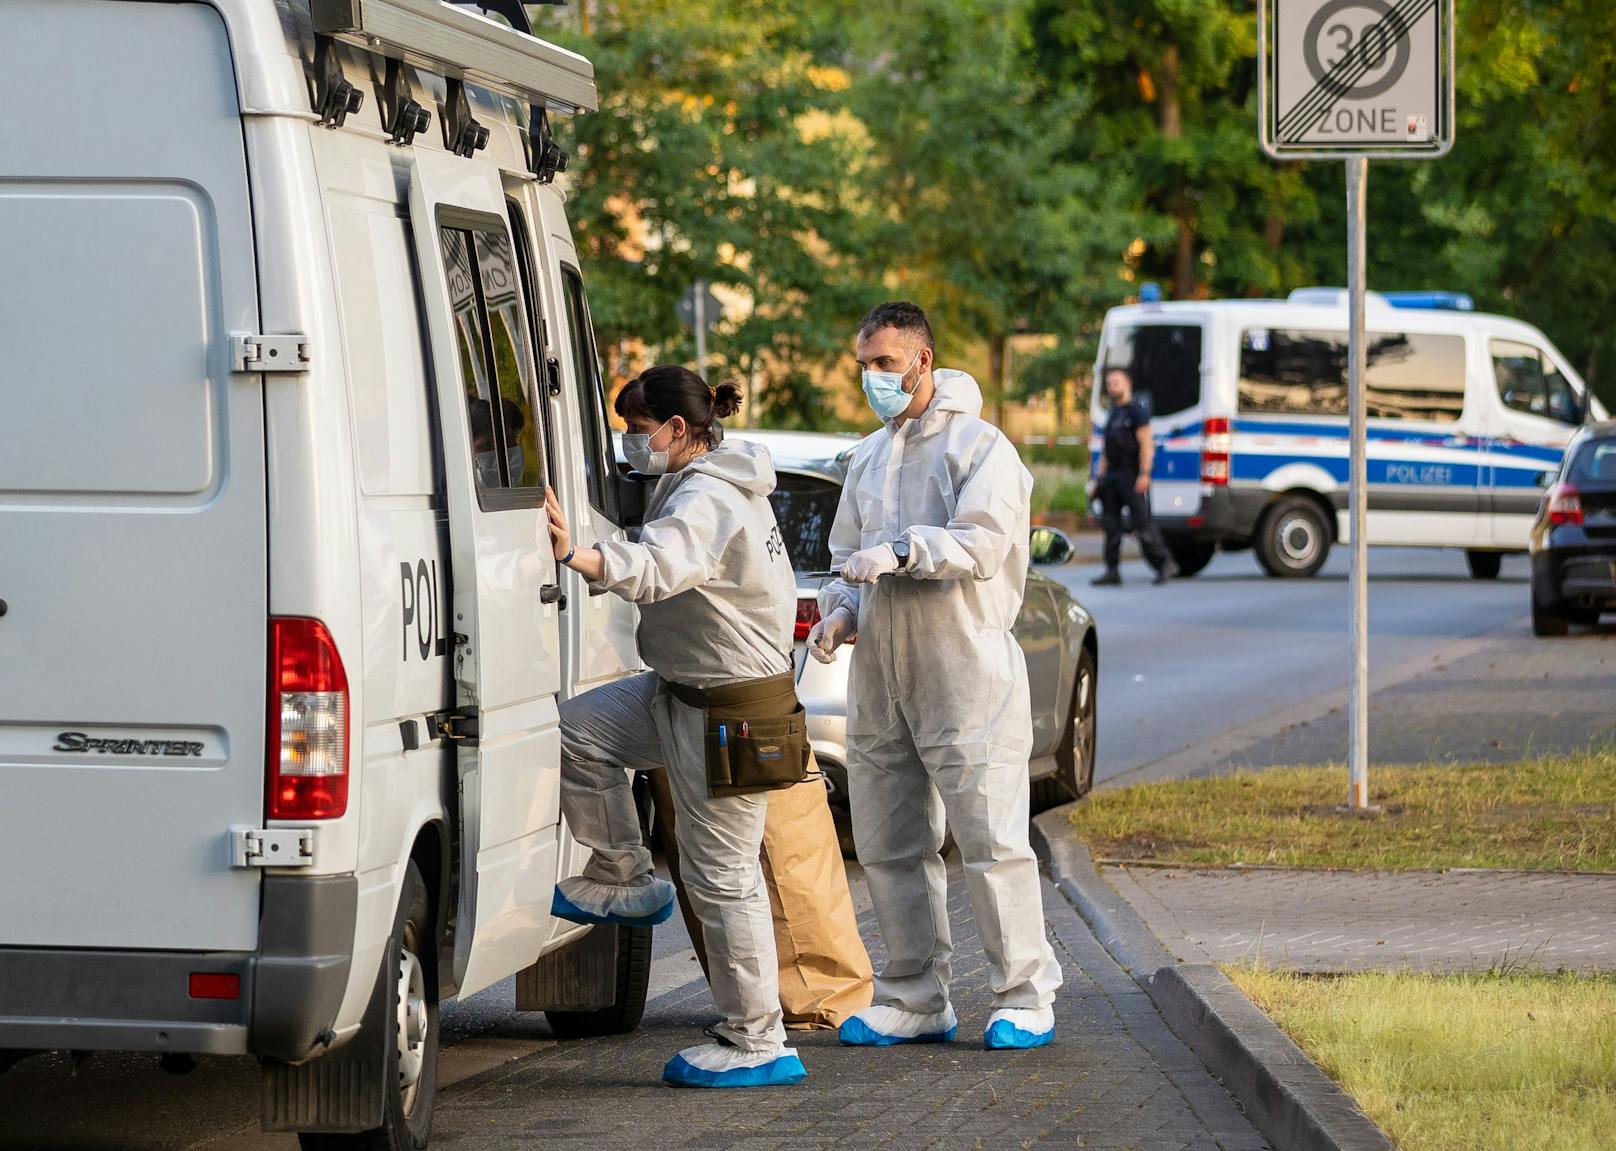 In der deutschen Stadt Espelkamp hat sich am Donnerstag (17. Juni 2021) ein Doppelmord zugetragen. 